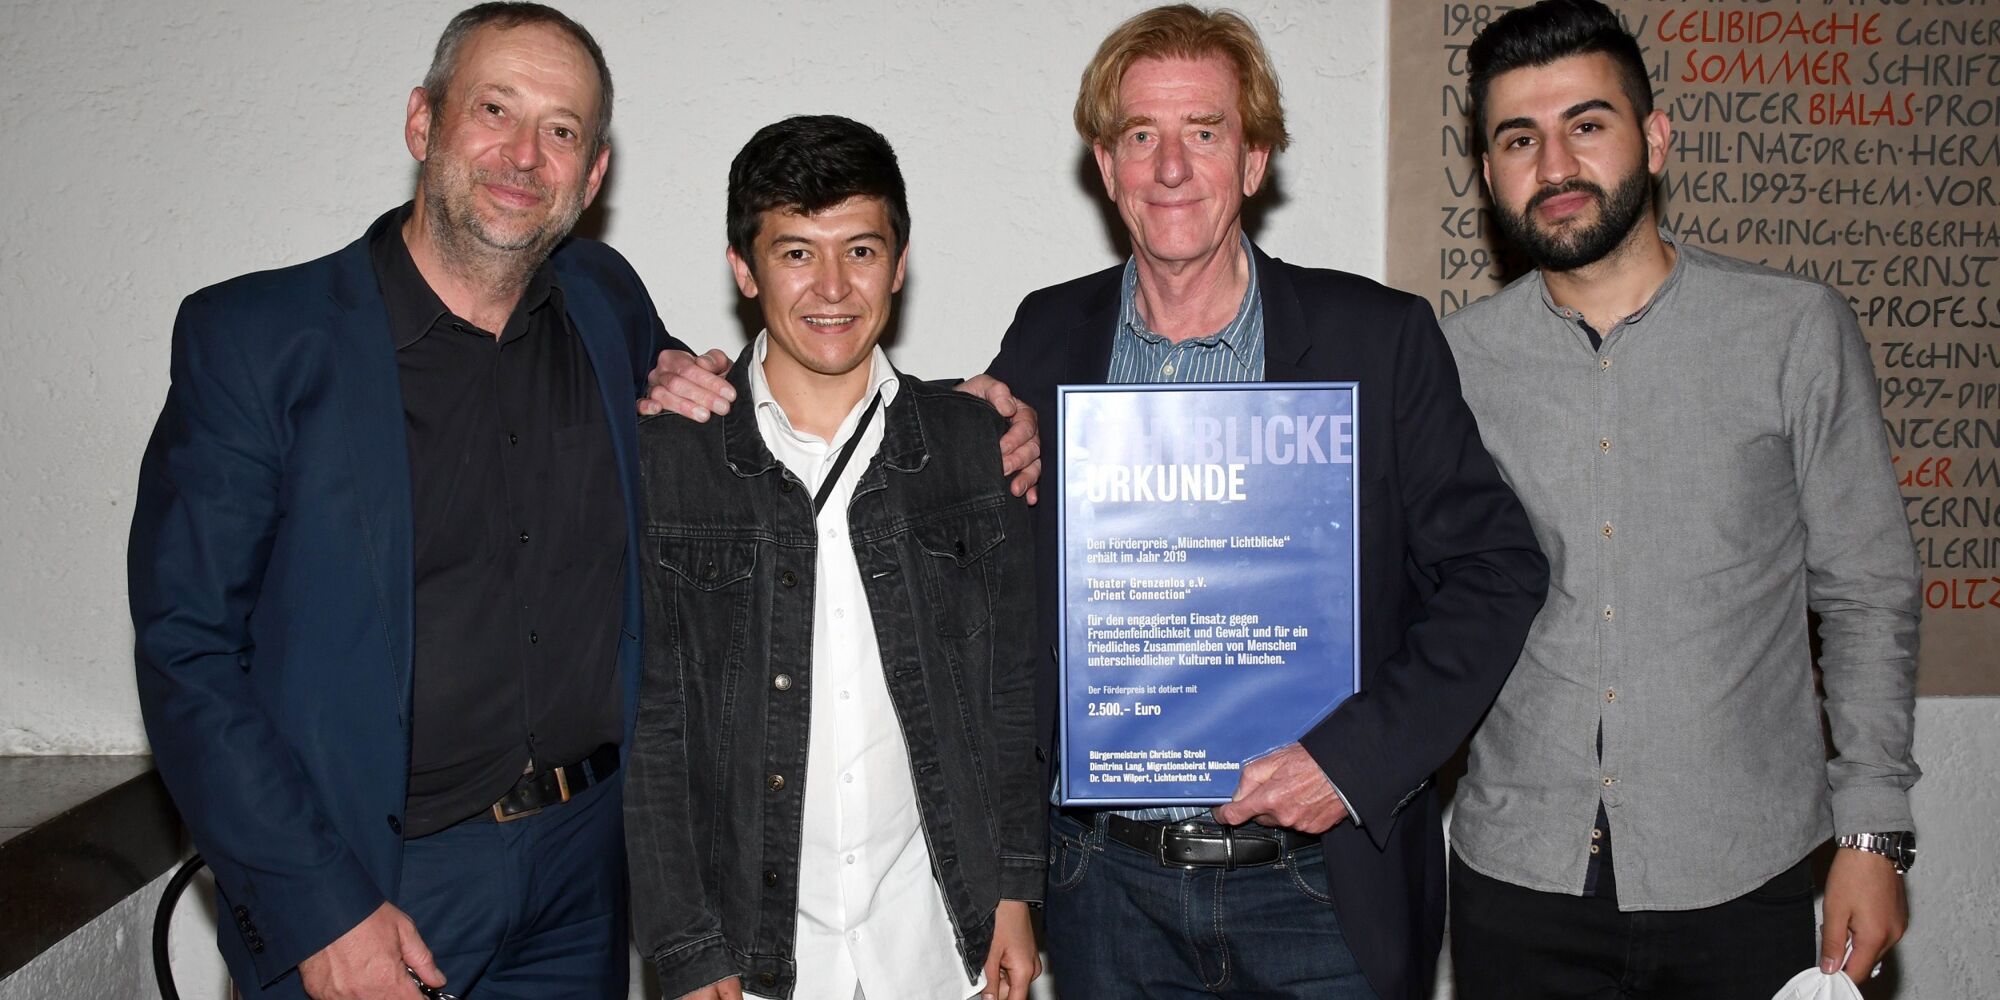 Hier sieht man Julian Franke-Ruthel, Abdul Hakim Rezai, Viktor Schenkel und Hani Ameen Samoo mit der Urkunde für die Auszeichnung "Münchner Lichtblicke".